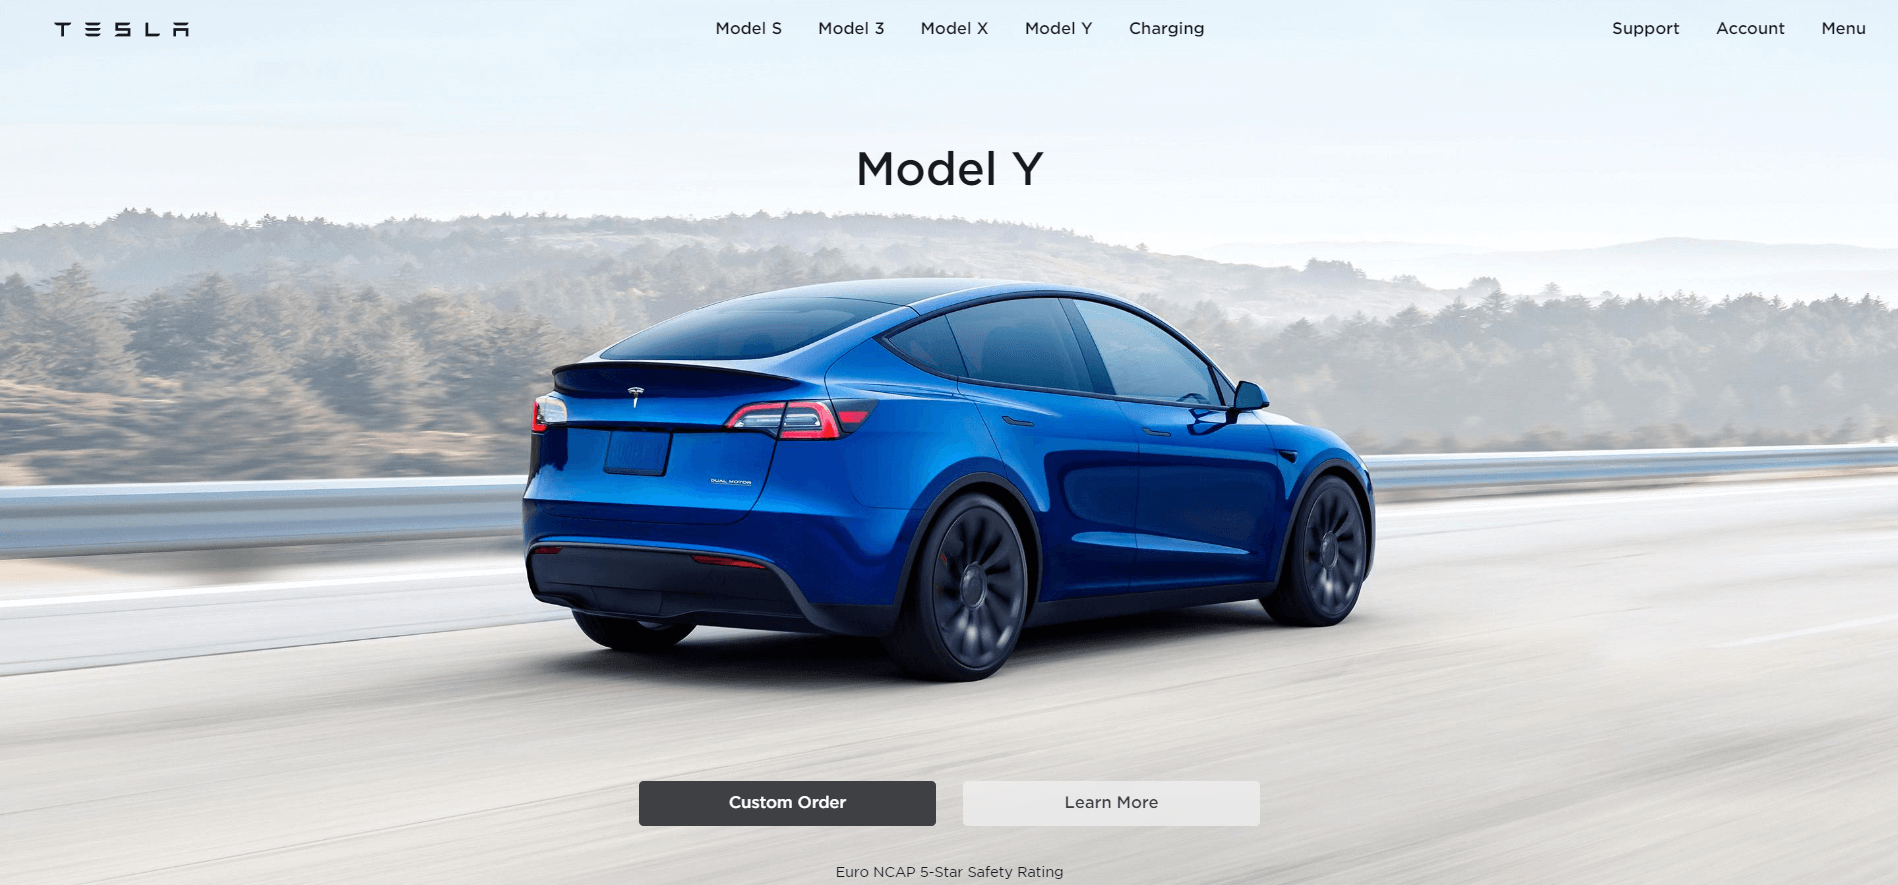 Ejemplo de marketing de referencia: Tesla